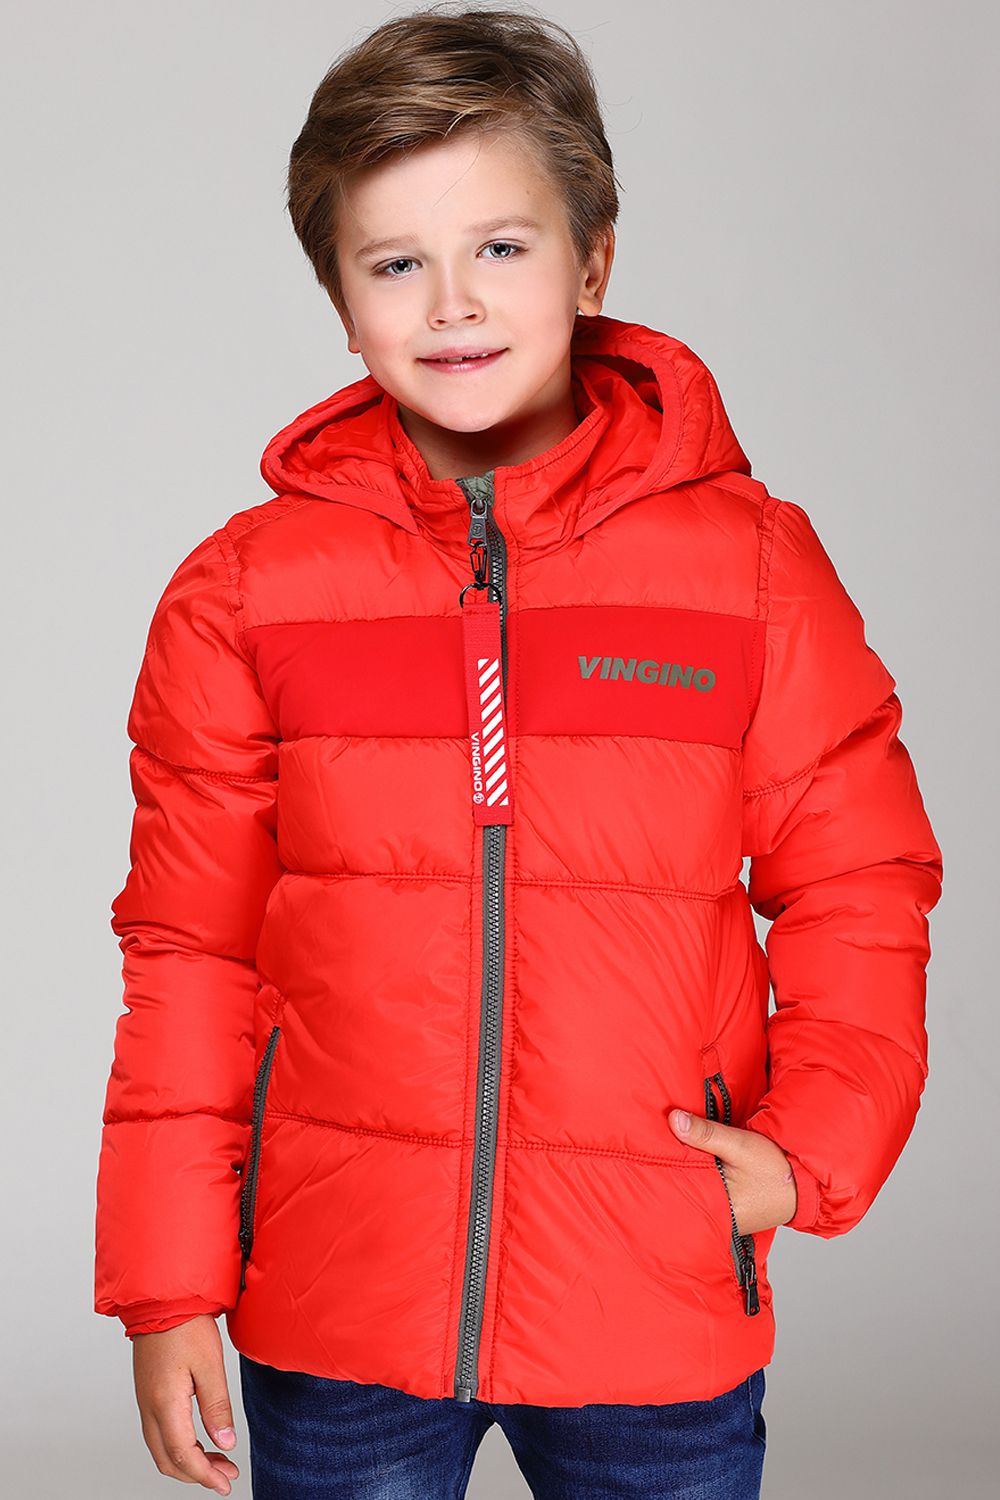 Валберис куртки мальчик. Куртка для мальчика. Красная куртка для мальчика. Модные куртки для мальчиков. Весенняя куртка для мальчика.